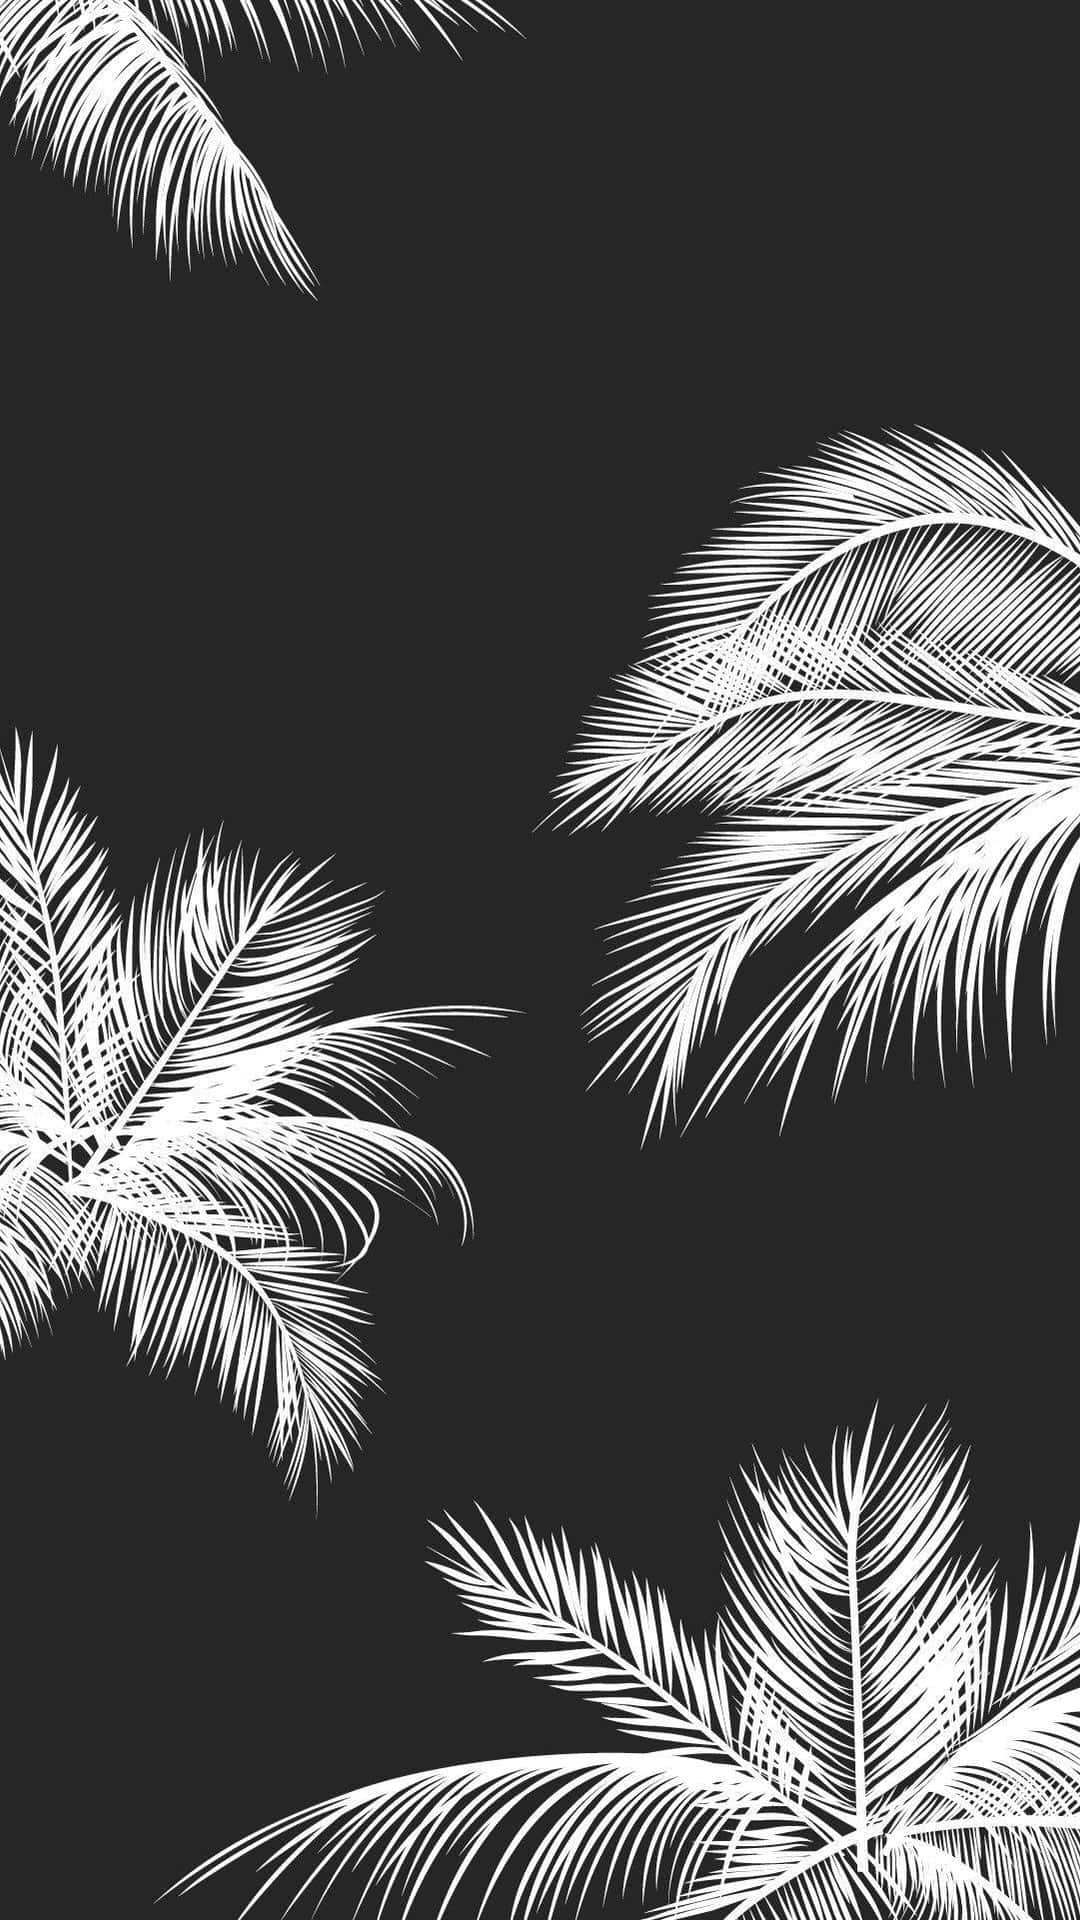 Hojasde Palma Estéticas En Blanco Y Negro. Fondo de pantalla